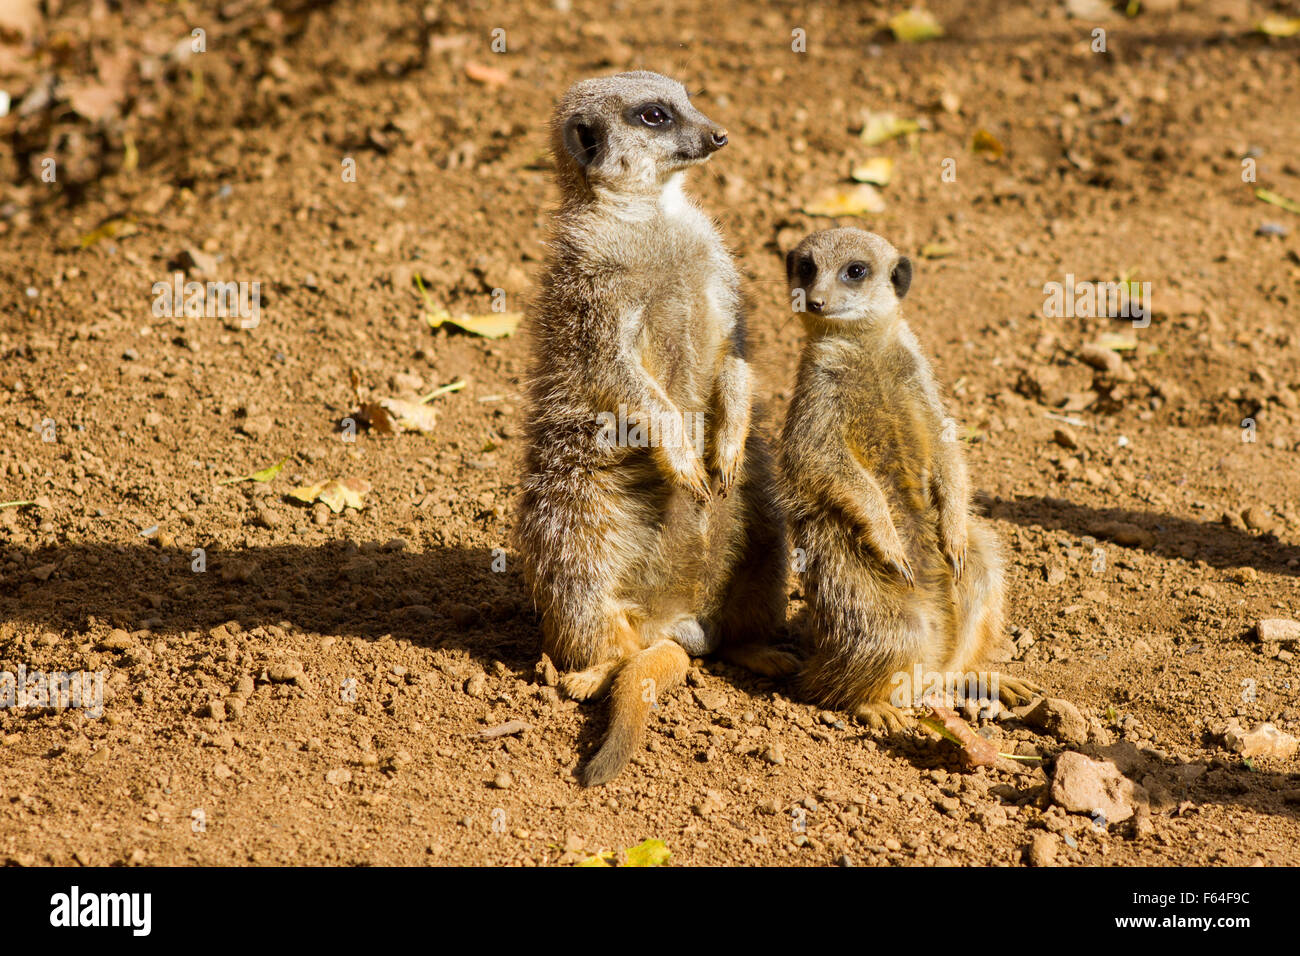 2 meerkats on the lookout for predators Stock Photo